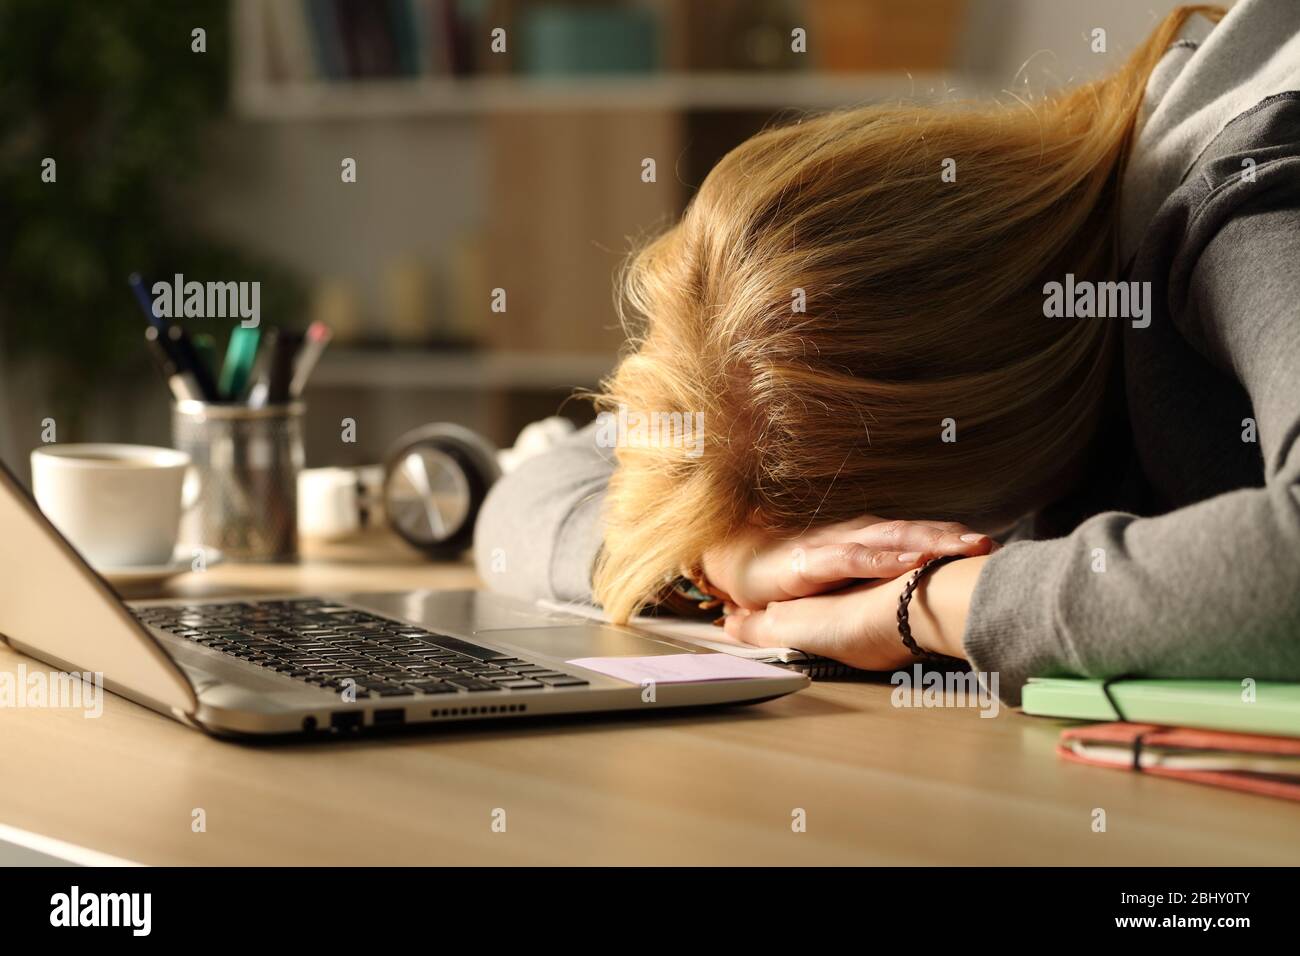 Primo piano di una studentessa stanca che dorme sulla scrivania a casa di notte Foto Stock